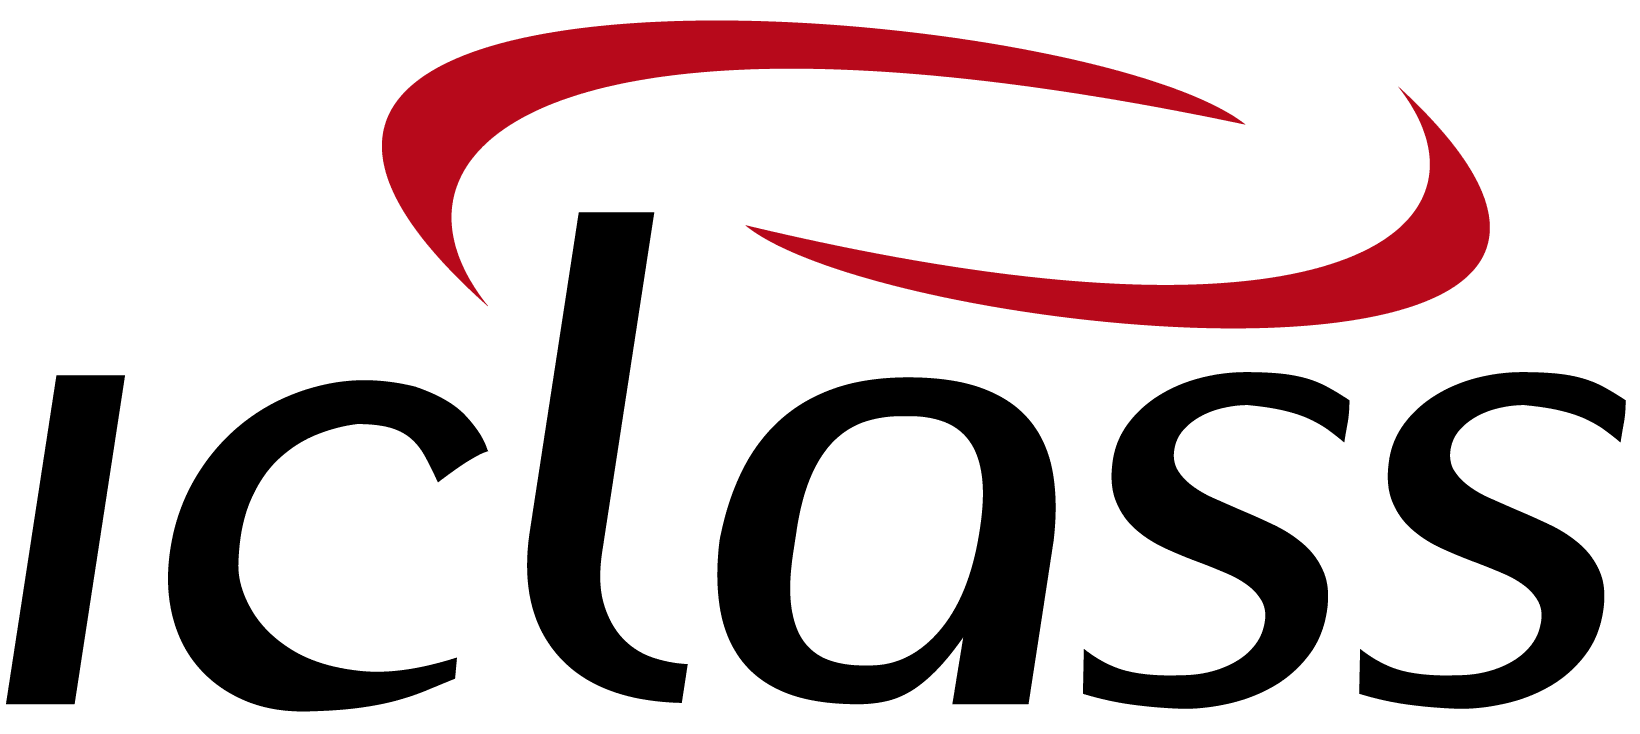 logo IClass Software de Ordem de Serviço Online Videos